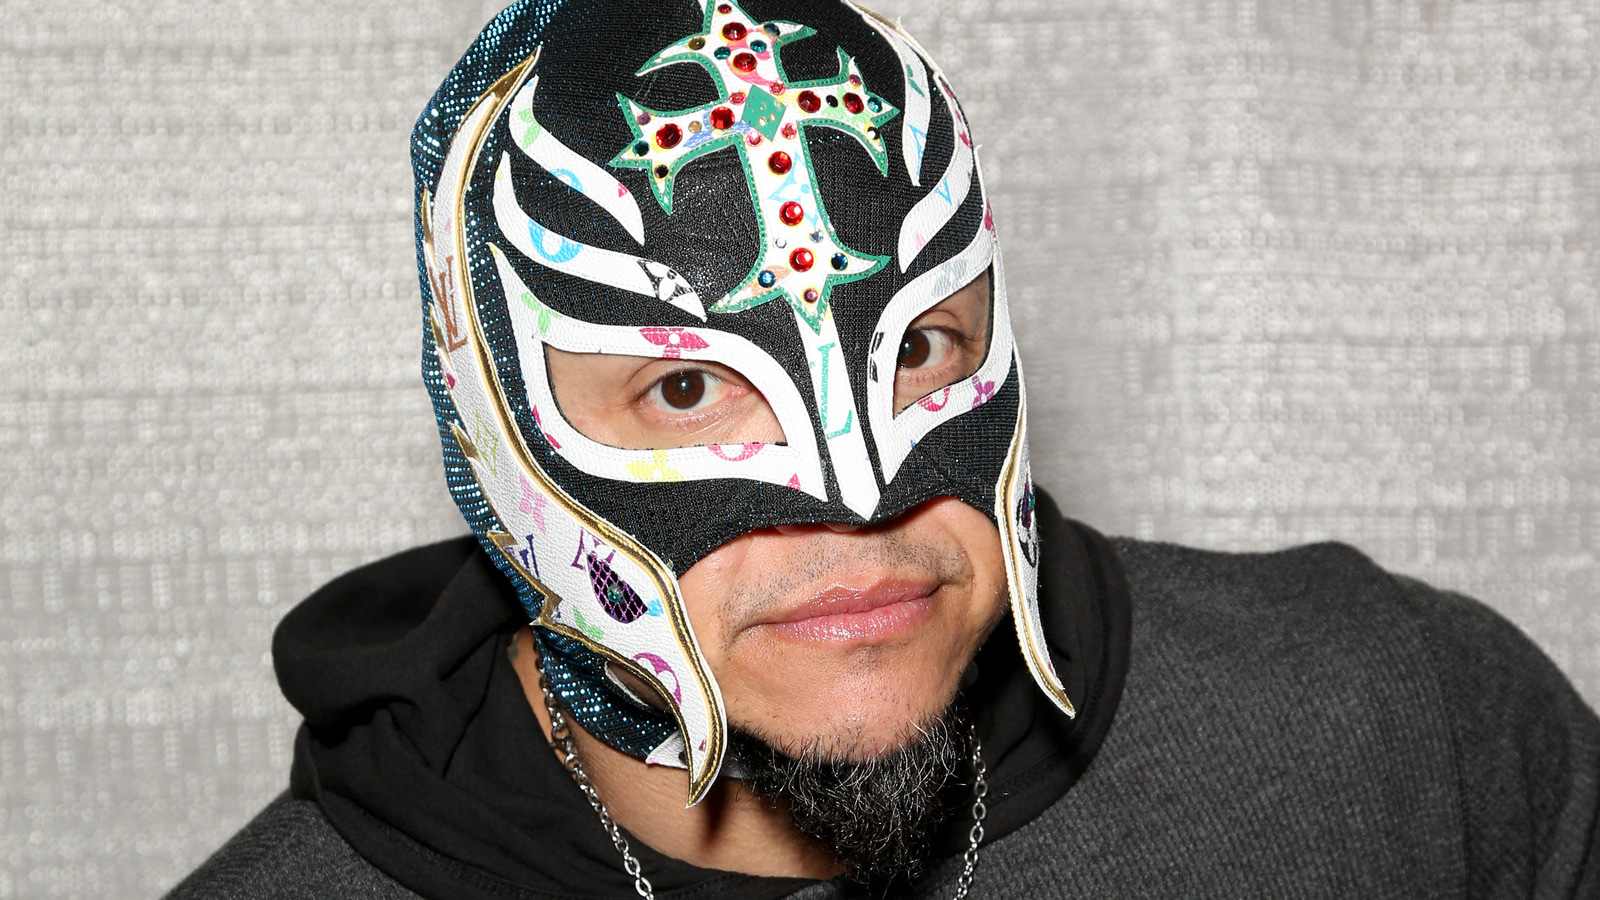 Konnan elogia el segmento de la WWE que involucra a Santos Escobar y Rey Mysterio